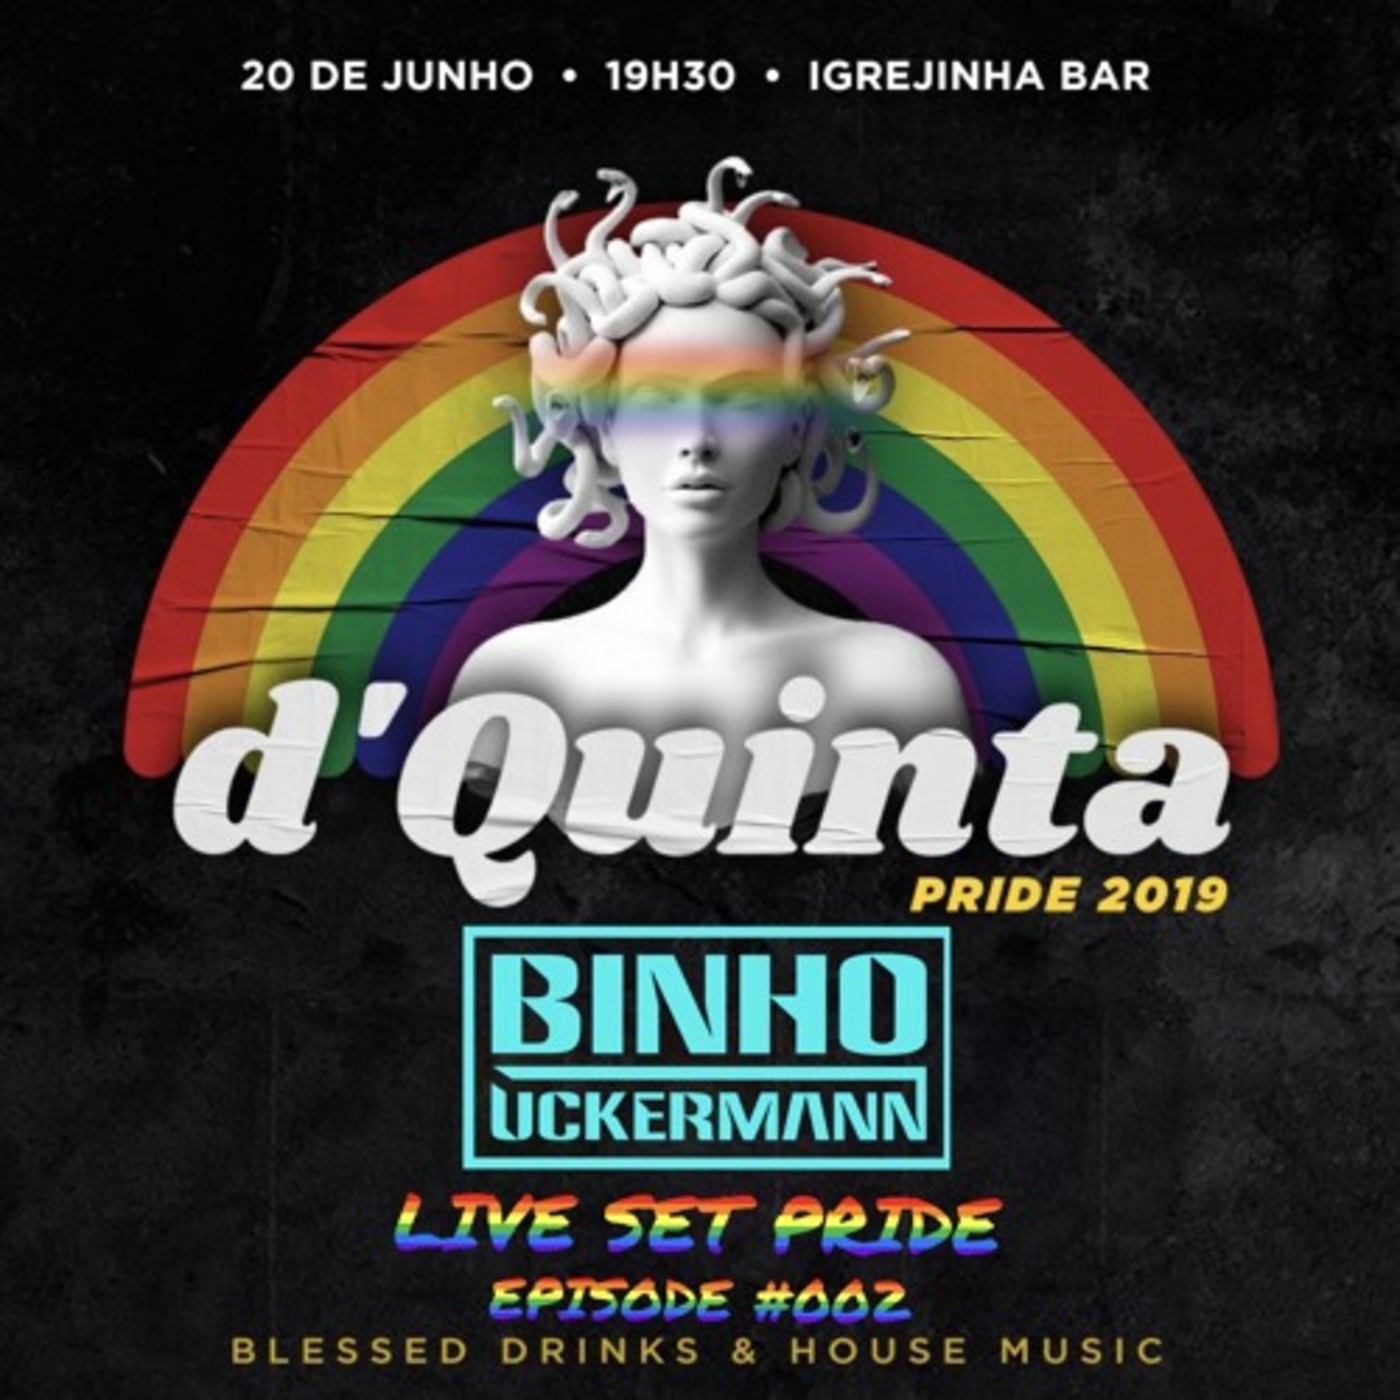 LIVE SET d'Quinta Pride 2019 Episode #002 - Igrejinha Bar São Paulo/Brazil